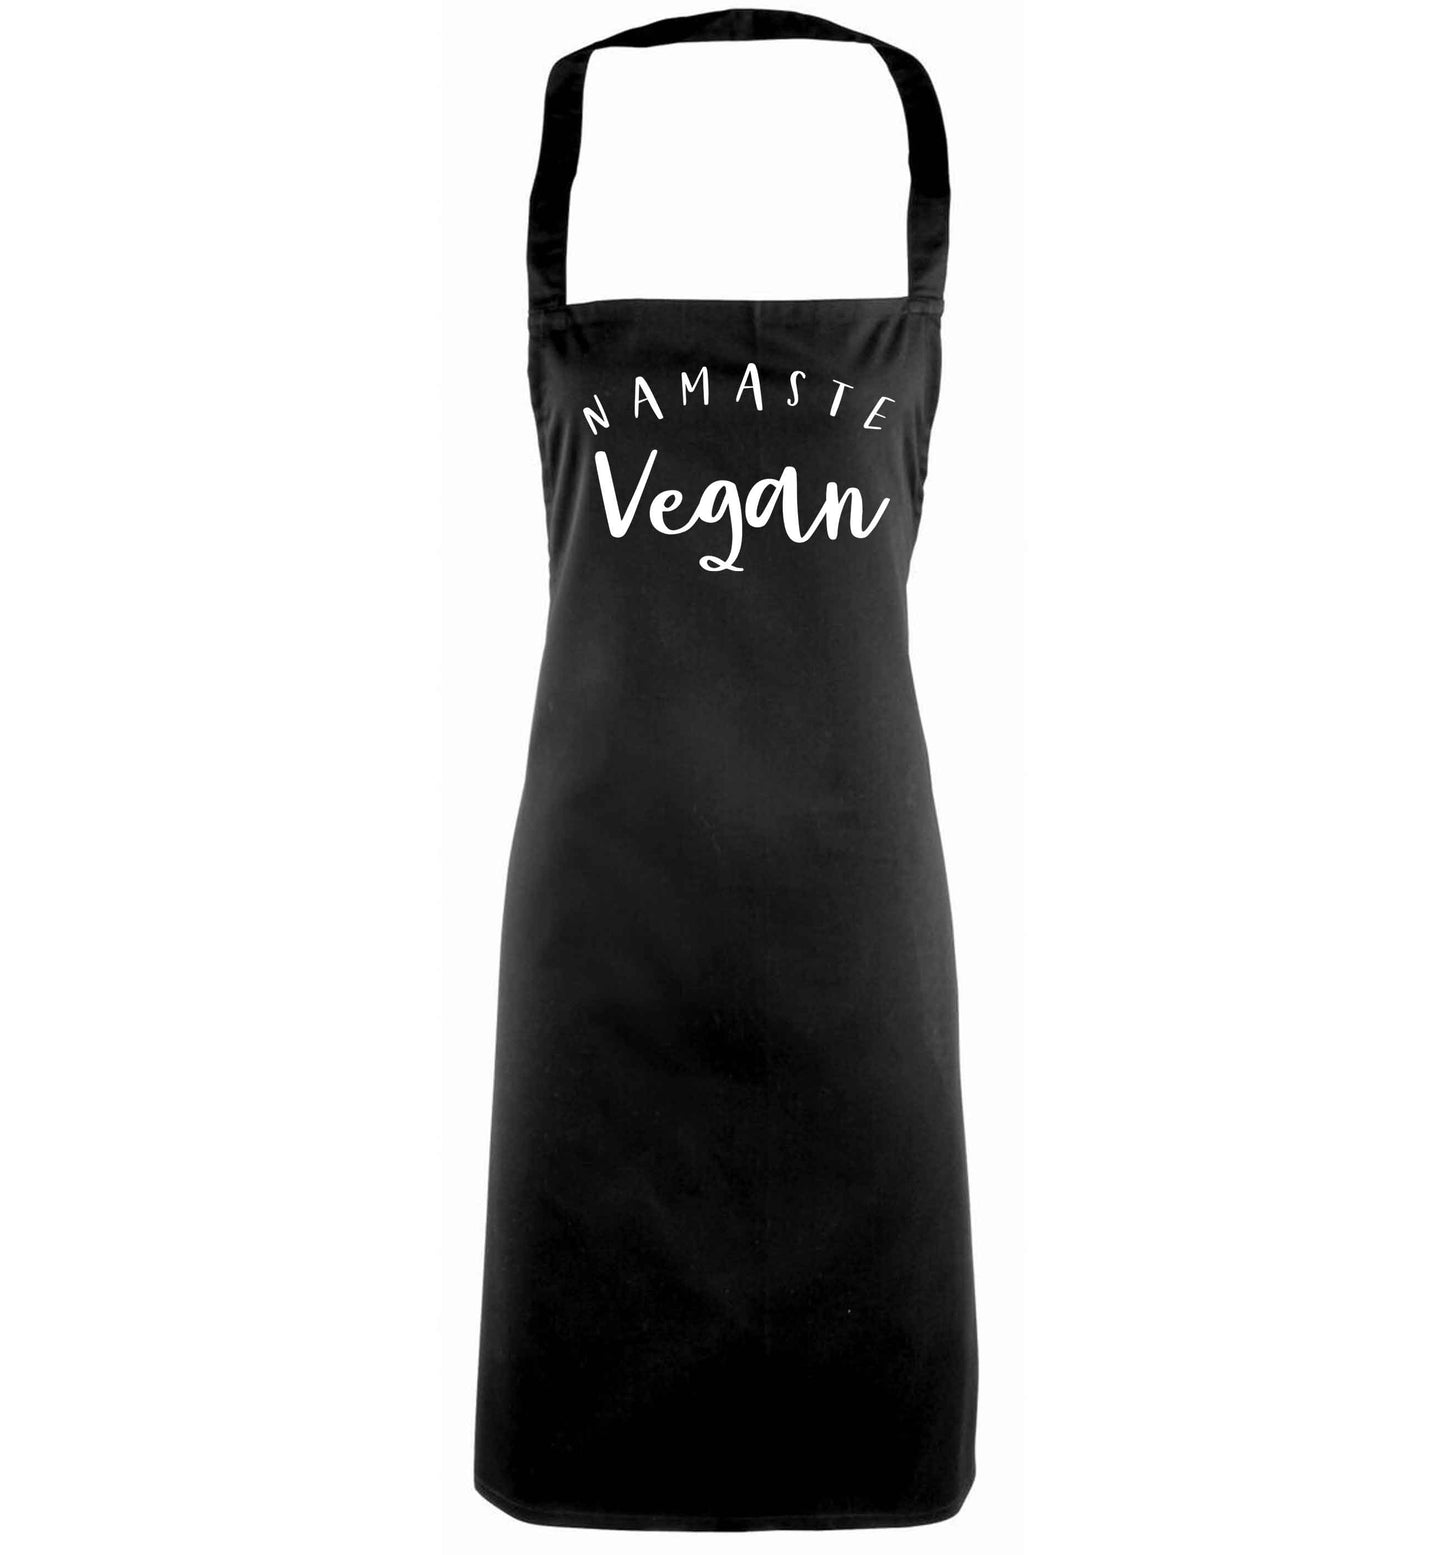 Namaste vegan black apron